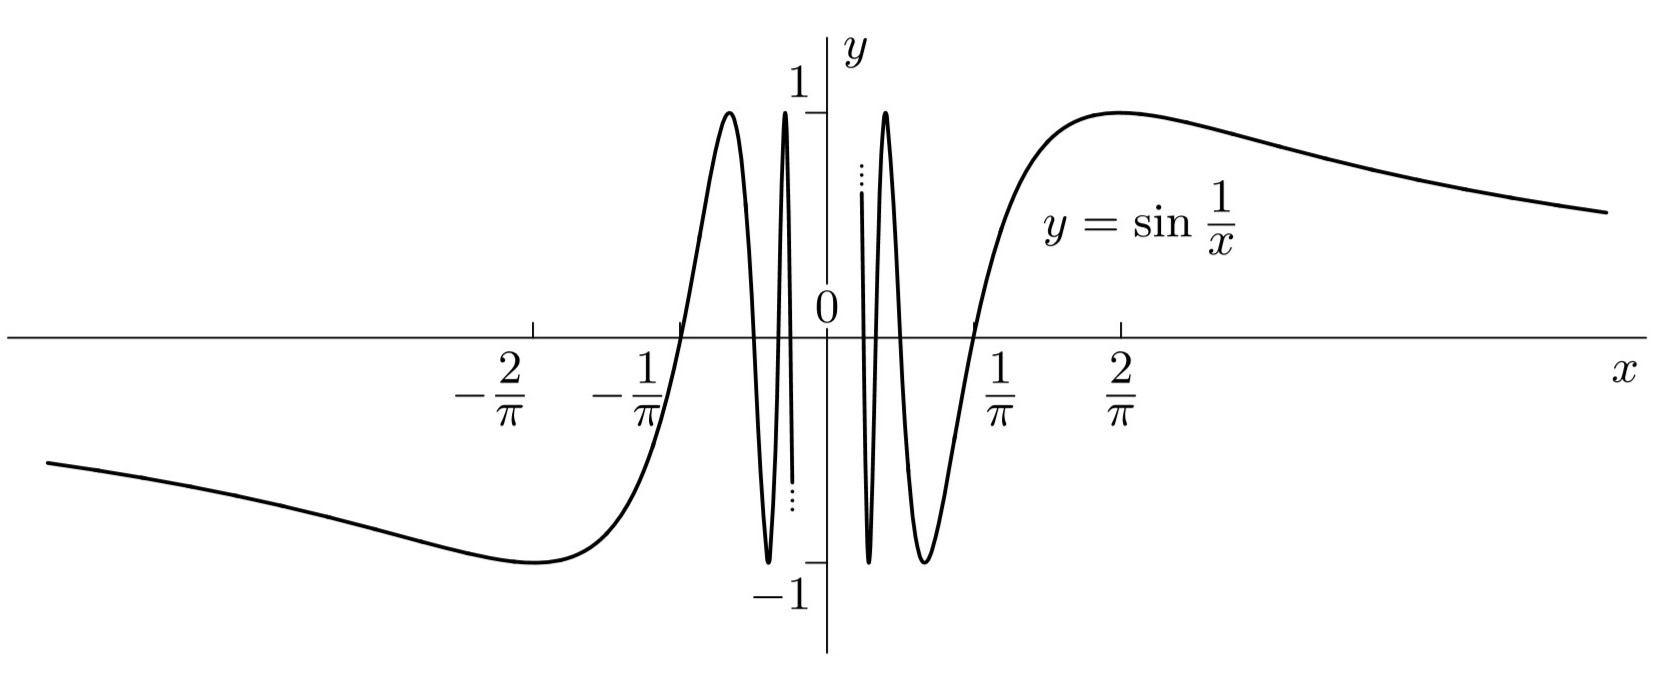 数学分析习题解-连续函数(1)